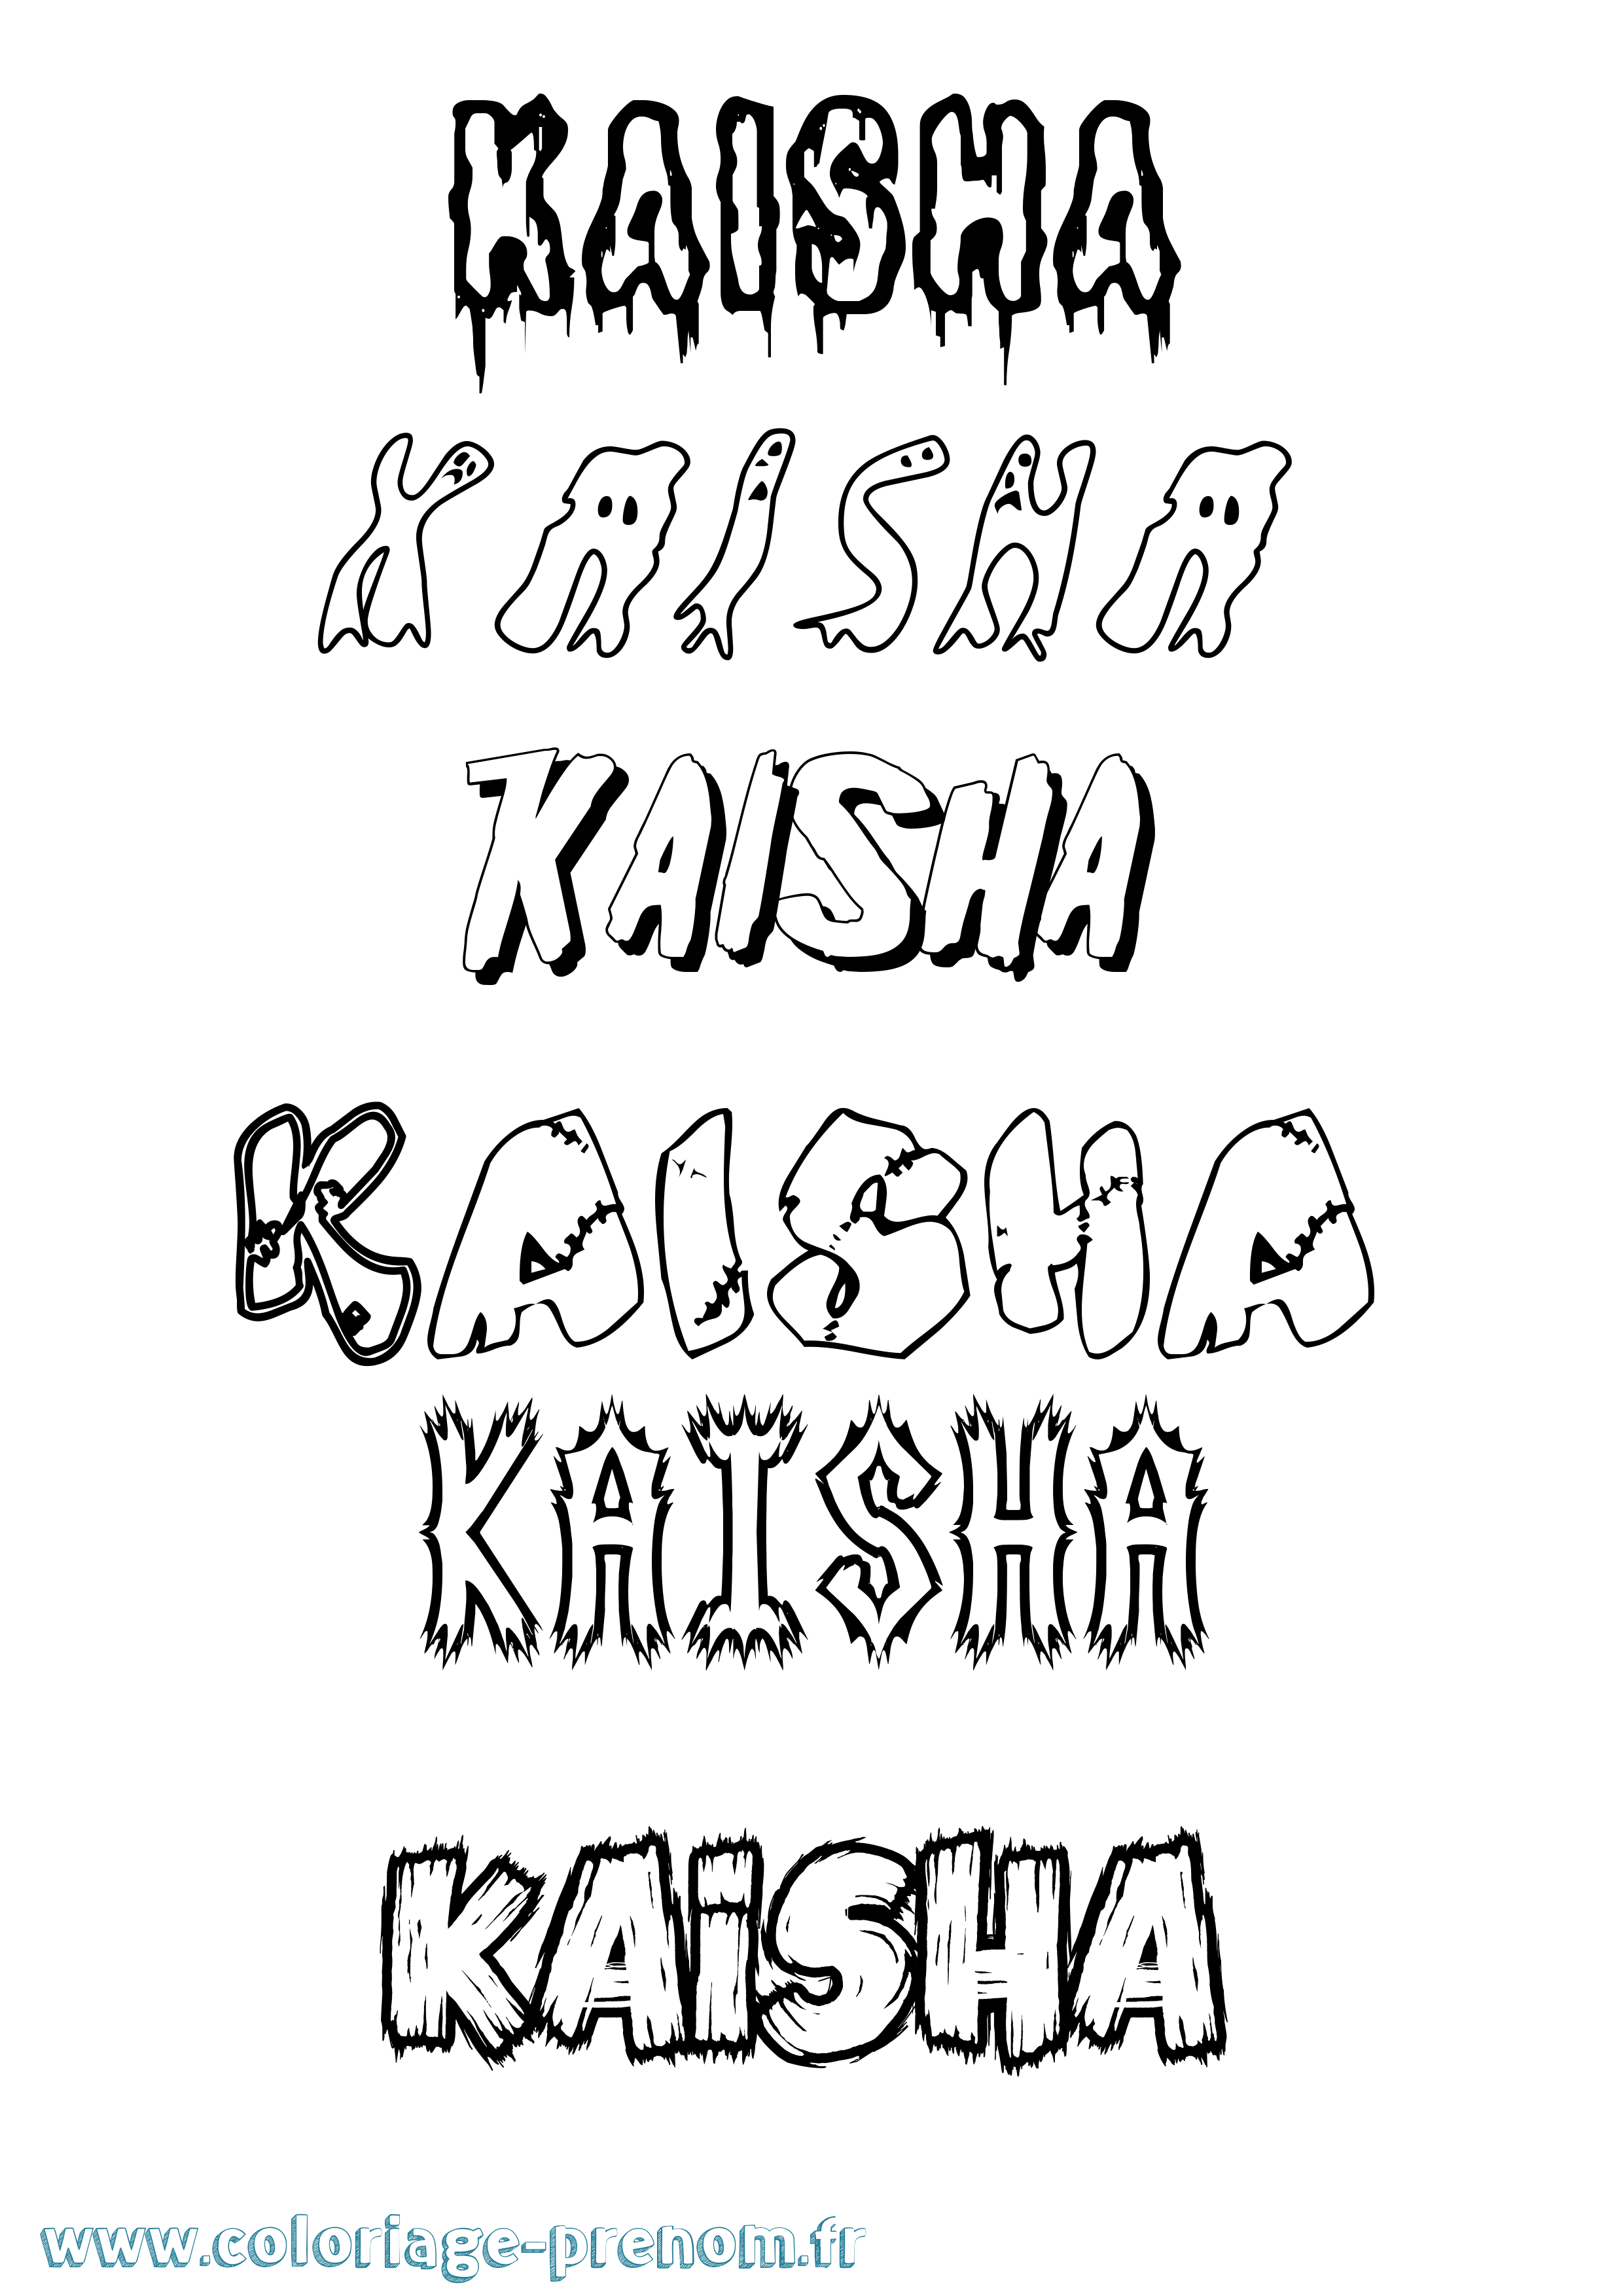 Coloriage prénom Kaisha Frisson